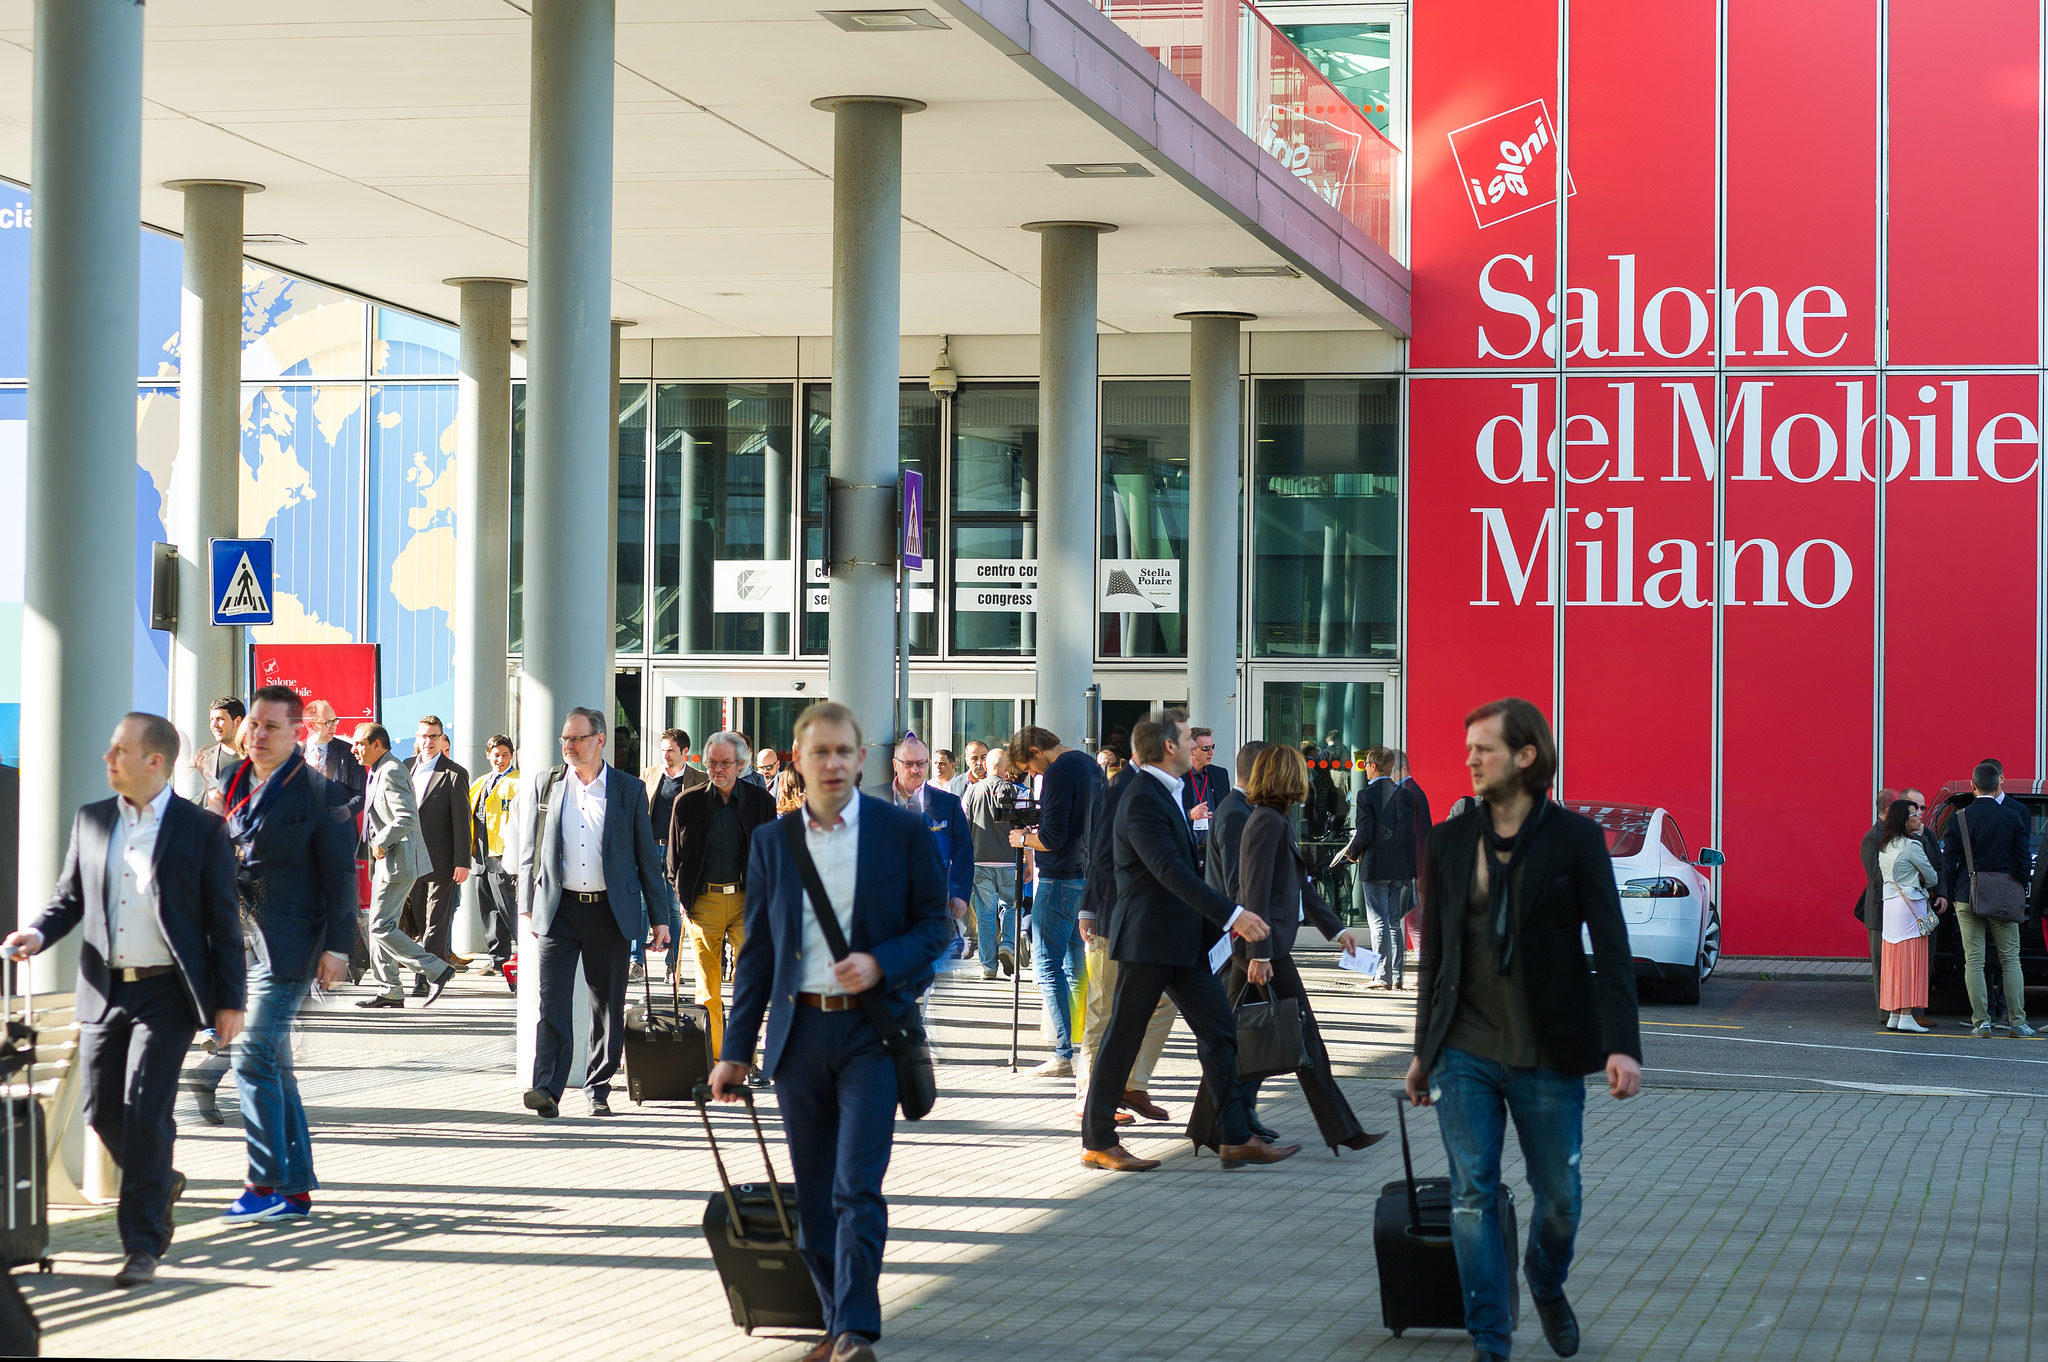 Milan Design Week: The Largest International Trade Fair